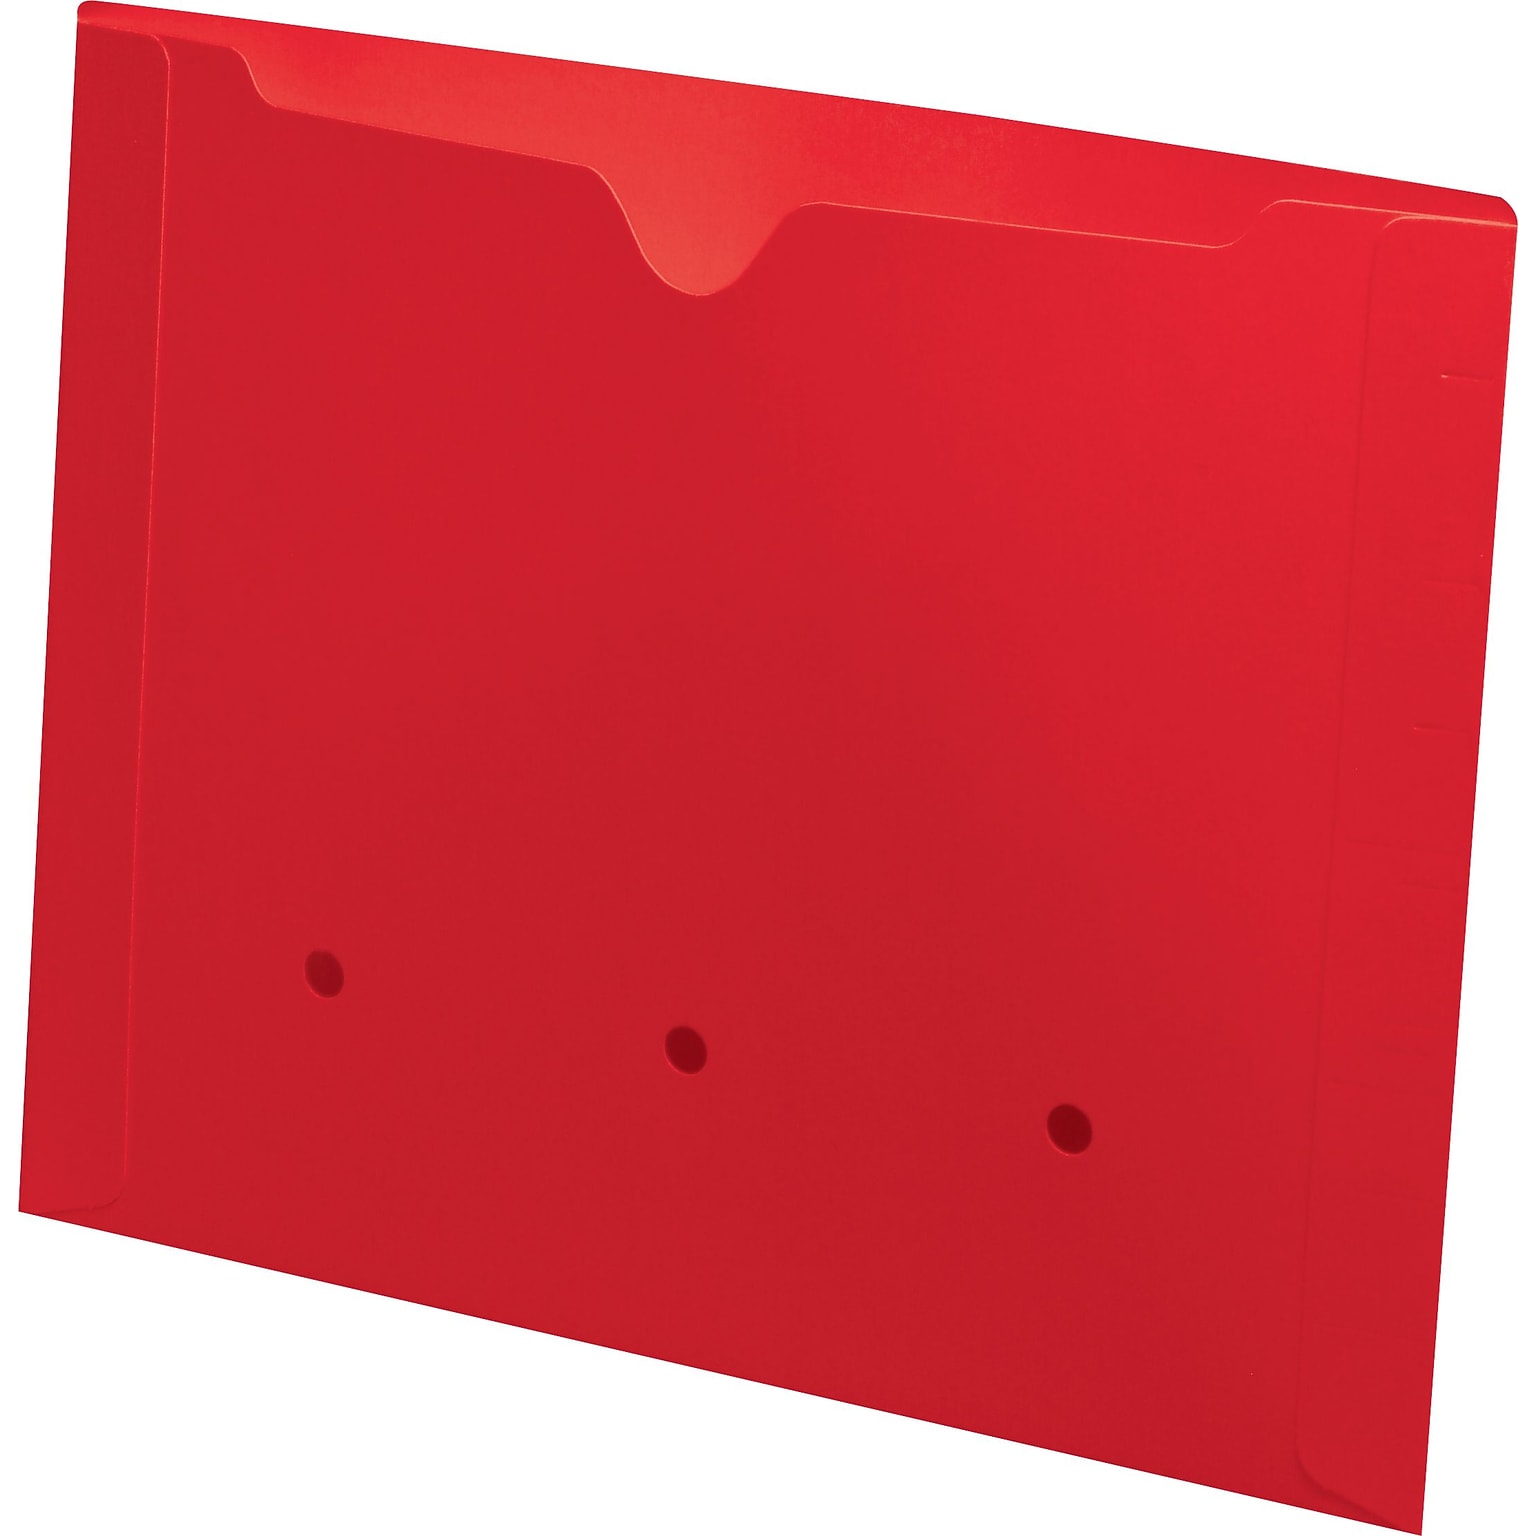 Medical Arts Press®  File Pocket, Letter Size, Red, 50/Box (52394RD)